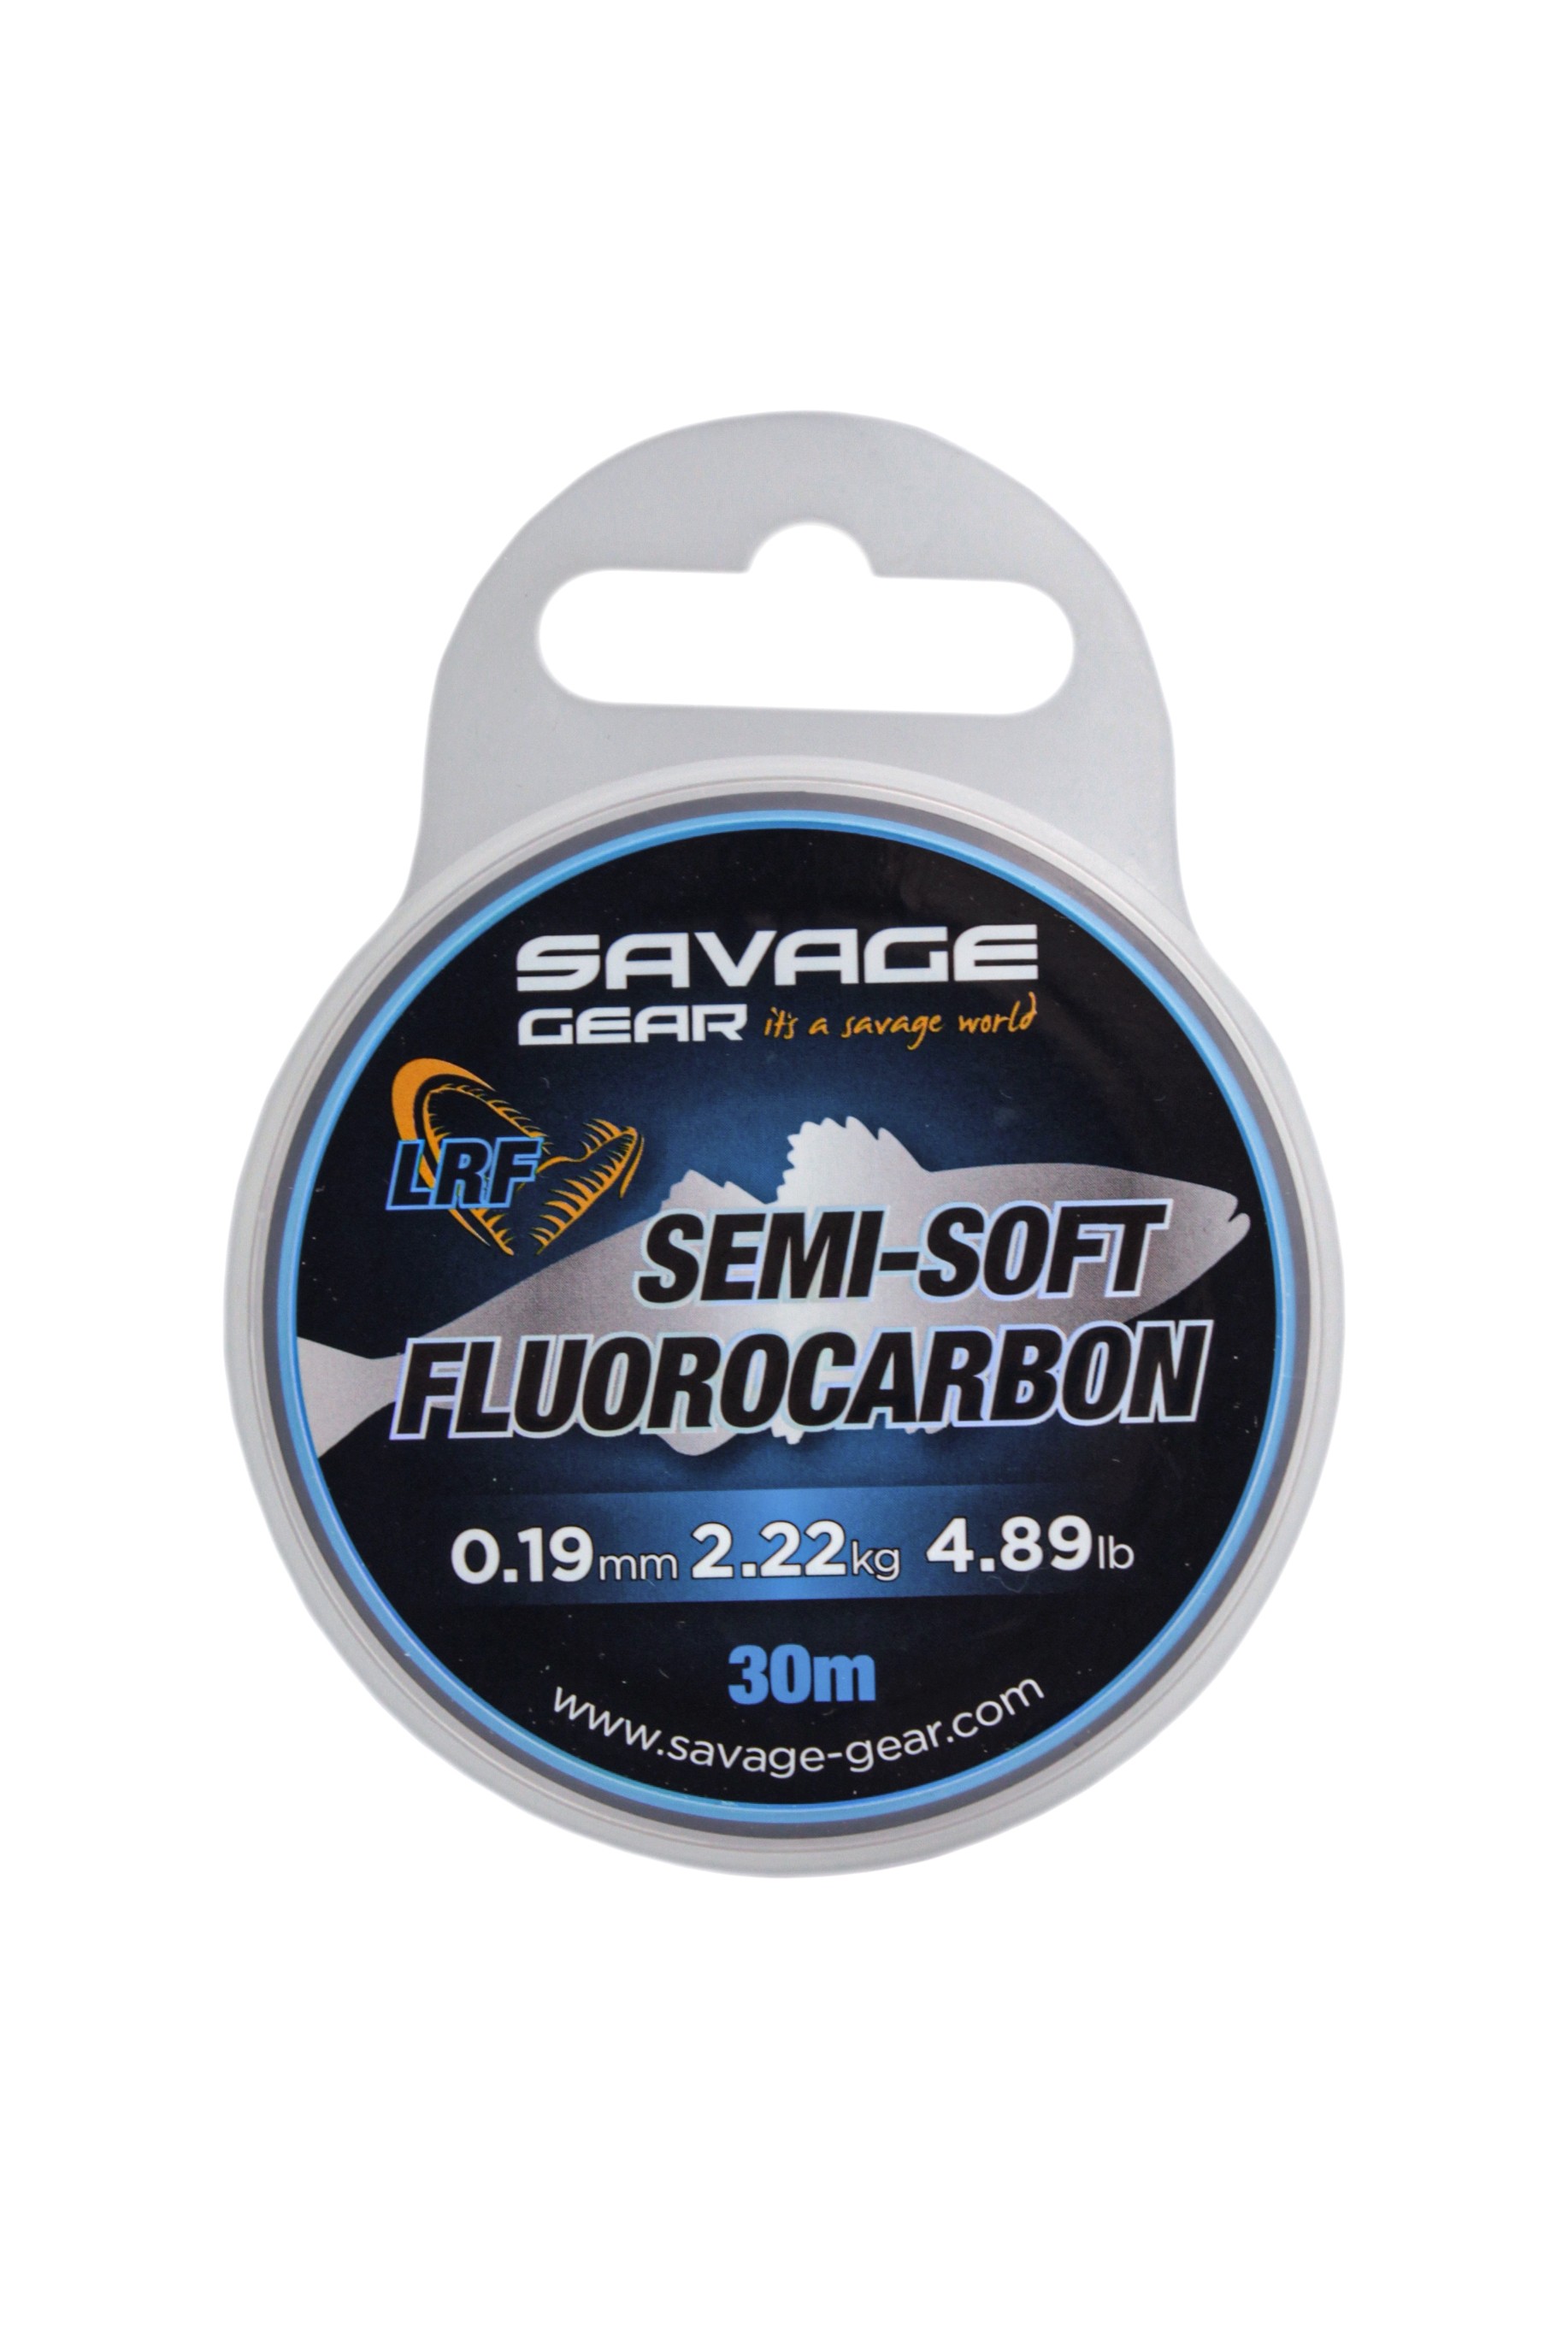 Леска Savage Gear Semi-soft fluorocarbon LRF 30м 0,19мм 2,22кг 4,89lbs clear - фото 1